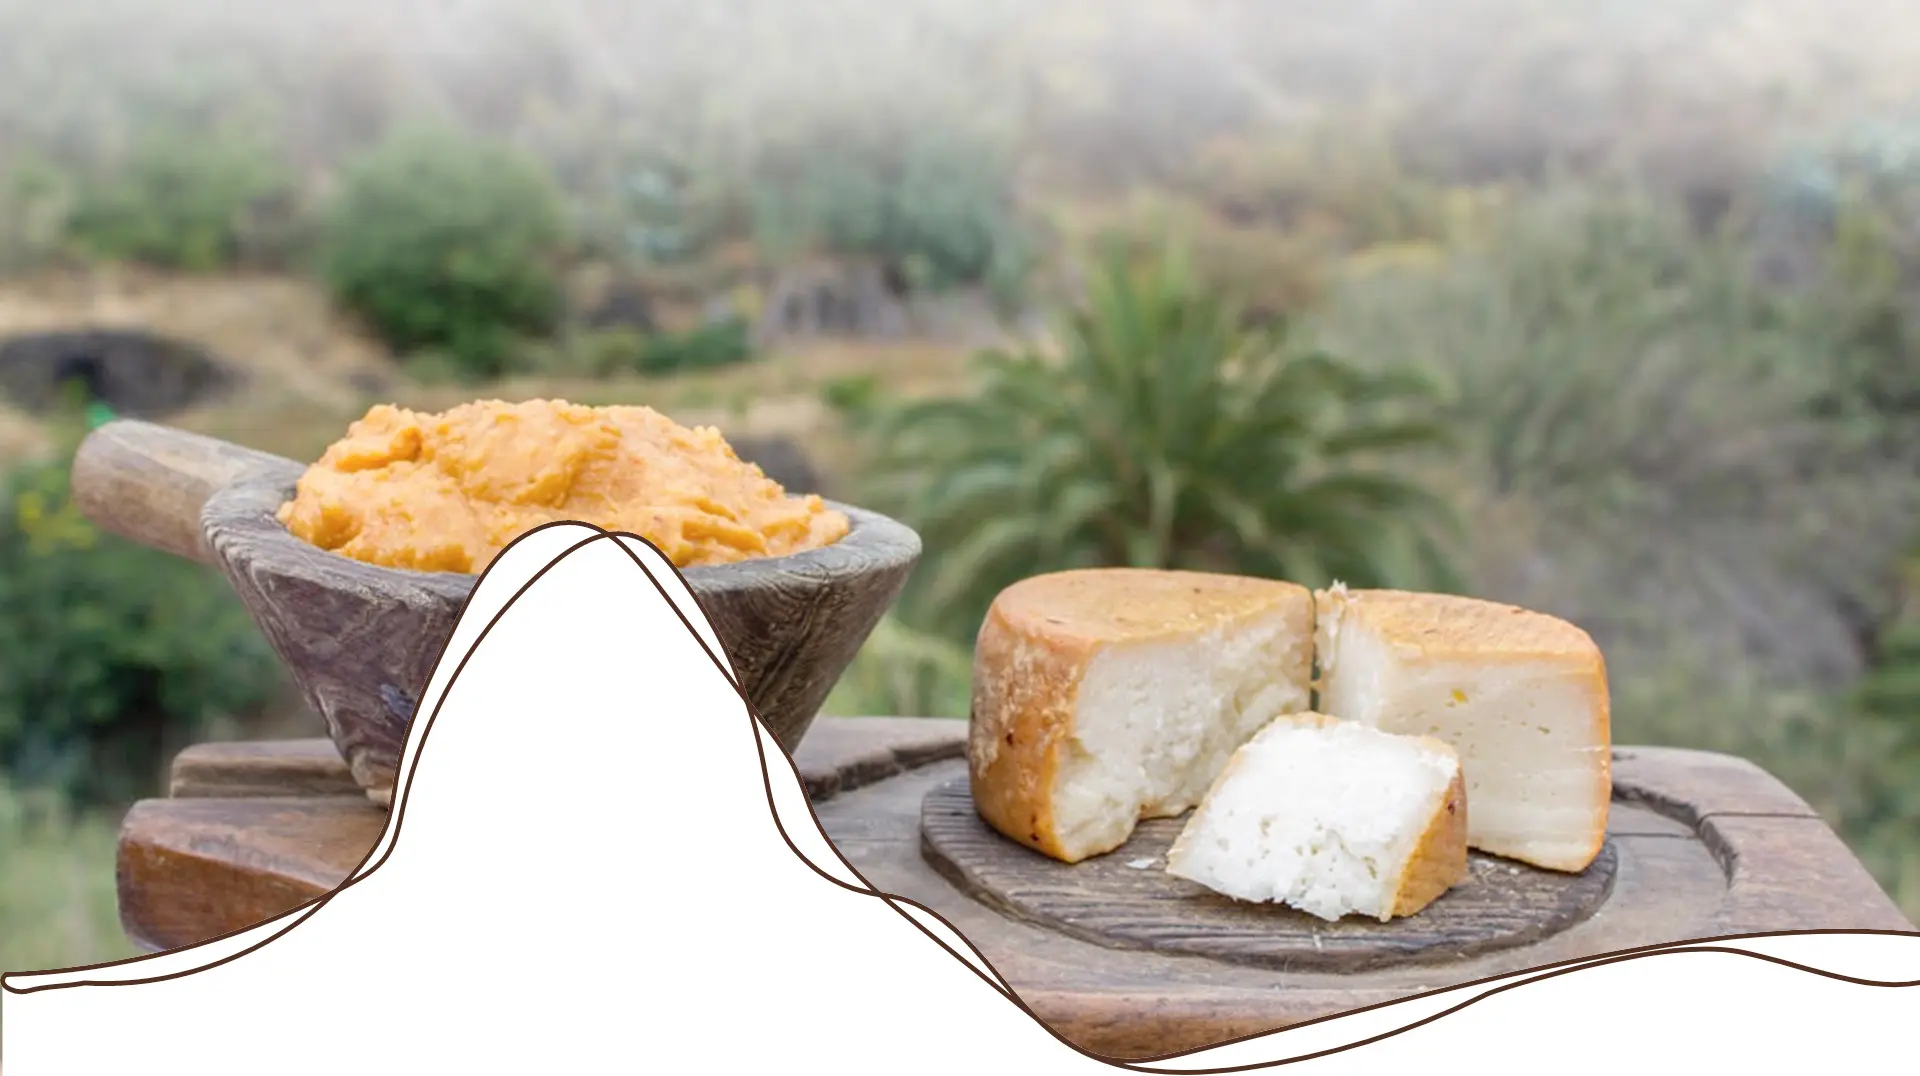 queso de la gomera - Cómo se llama el queso de La Gomera